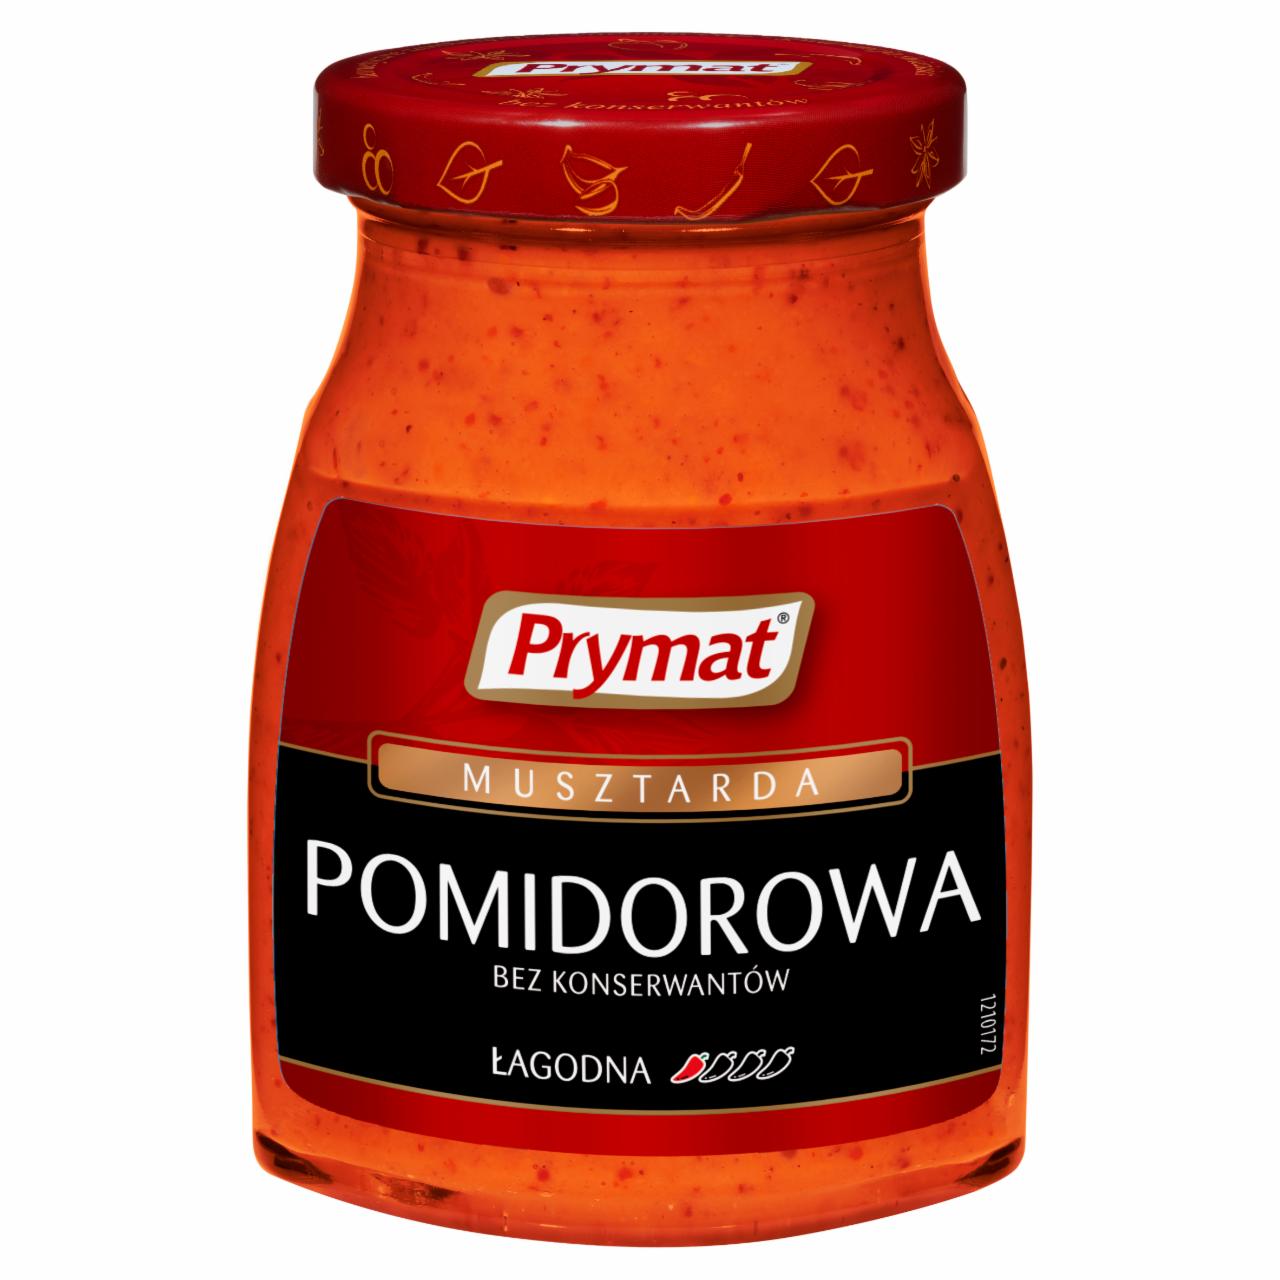 Zdjęcia - Prymat Musztarda pomidorowa 185 g